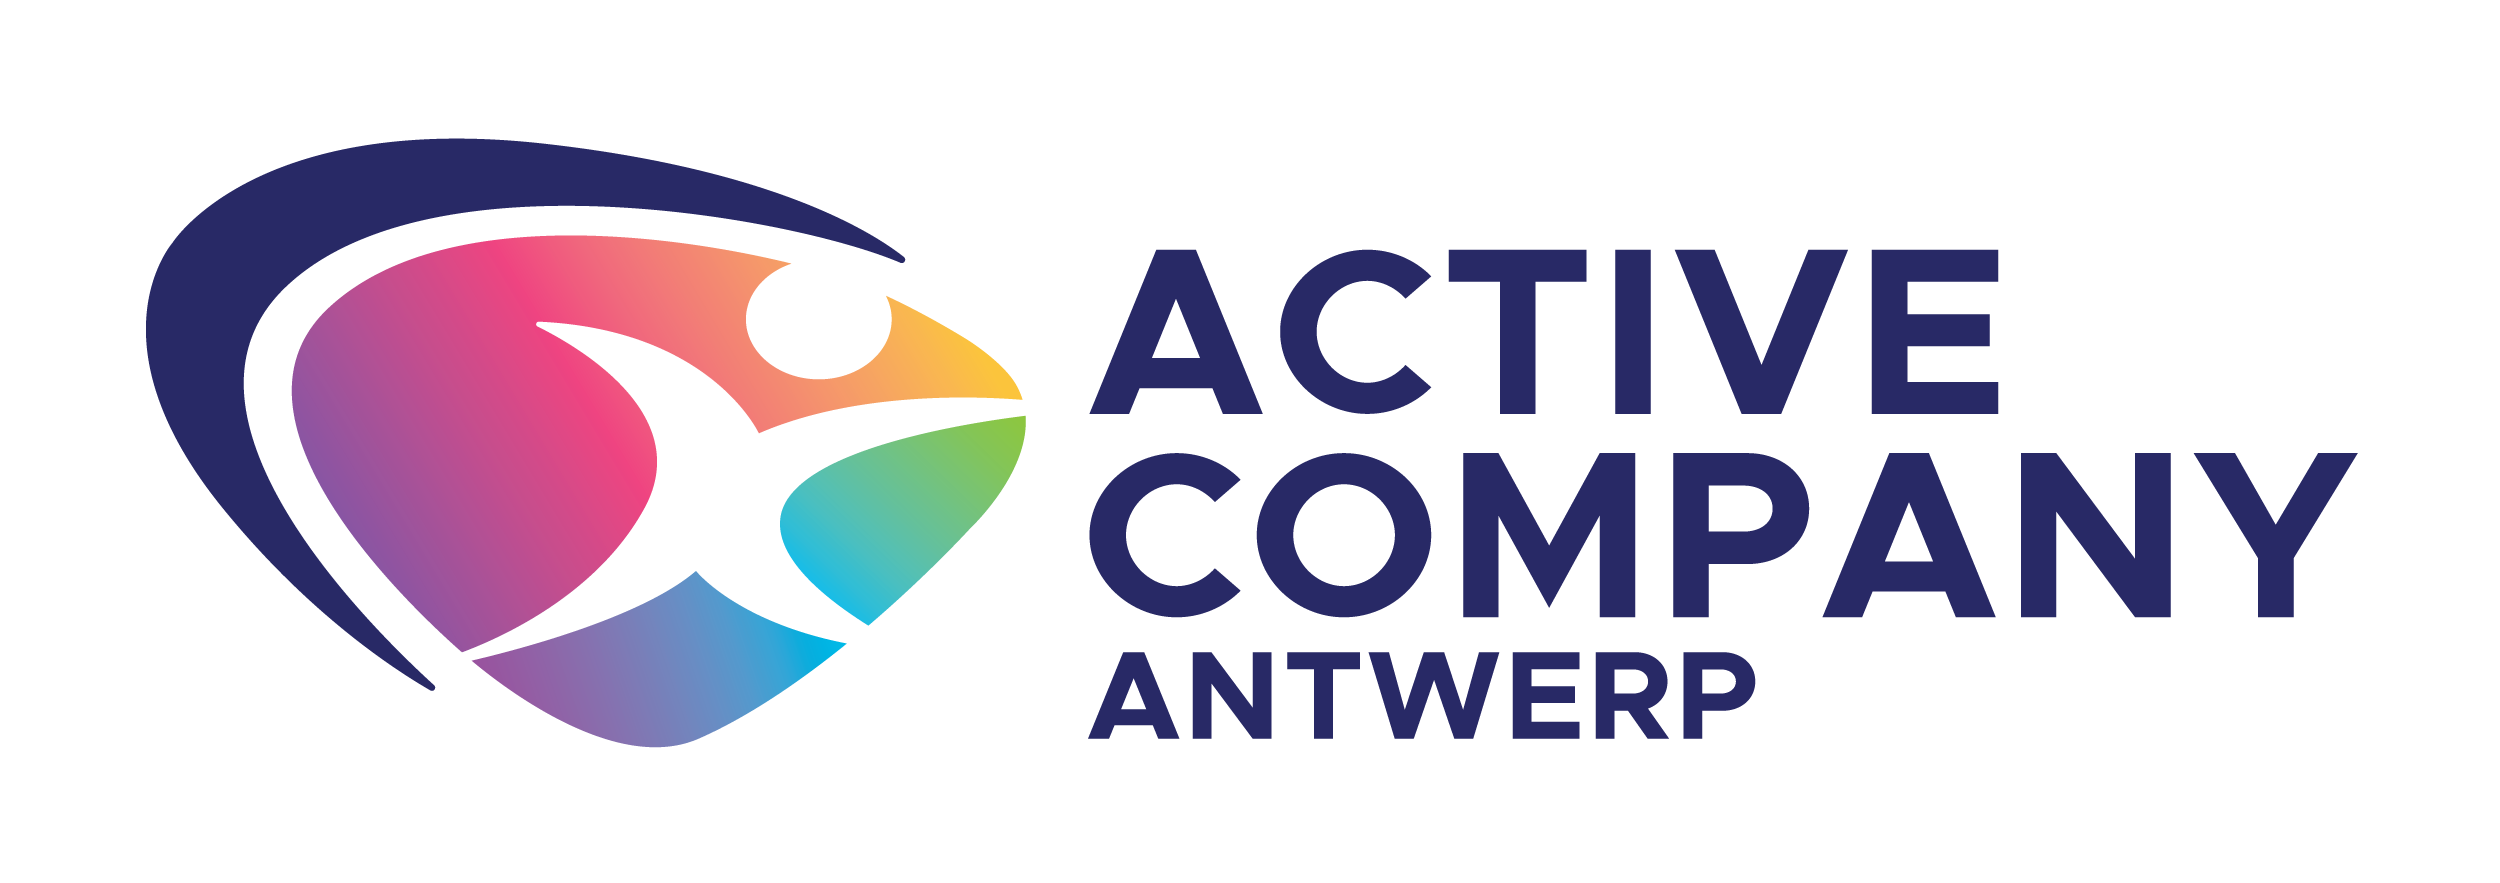 Active Company Antwerp Logo